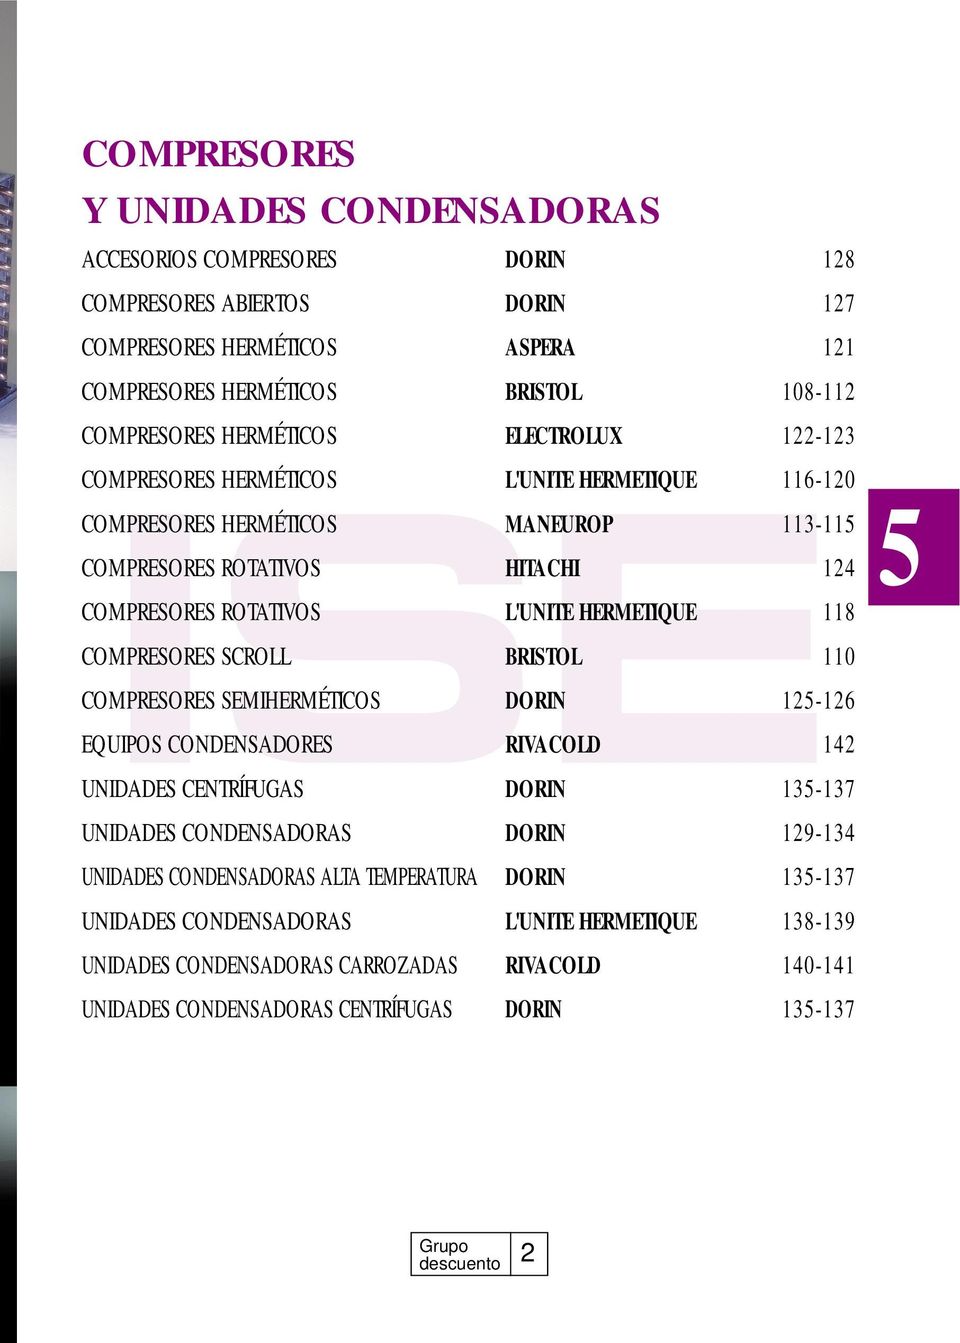 COMPRESORES SCROLL BRISTOL 110 COMPRESORES SEMIHERMÉTICOS DORIN 125-126 EQUIPOS CONDENSADORES RIVACOLD 142 UNIDADES CENTRÍFUGAS DORIN 135-137 UNIDADES CONDENSADORAS DORIN 129-134 UNIDADES